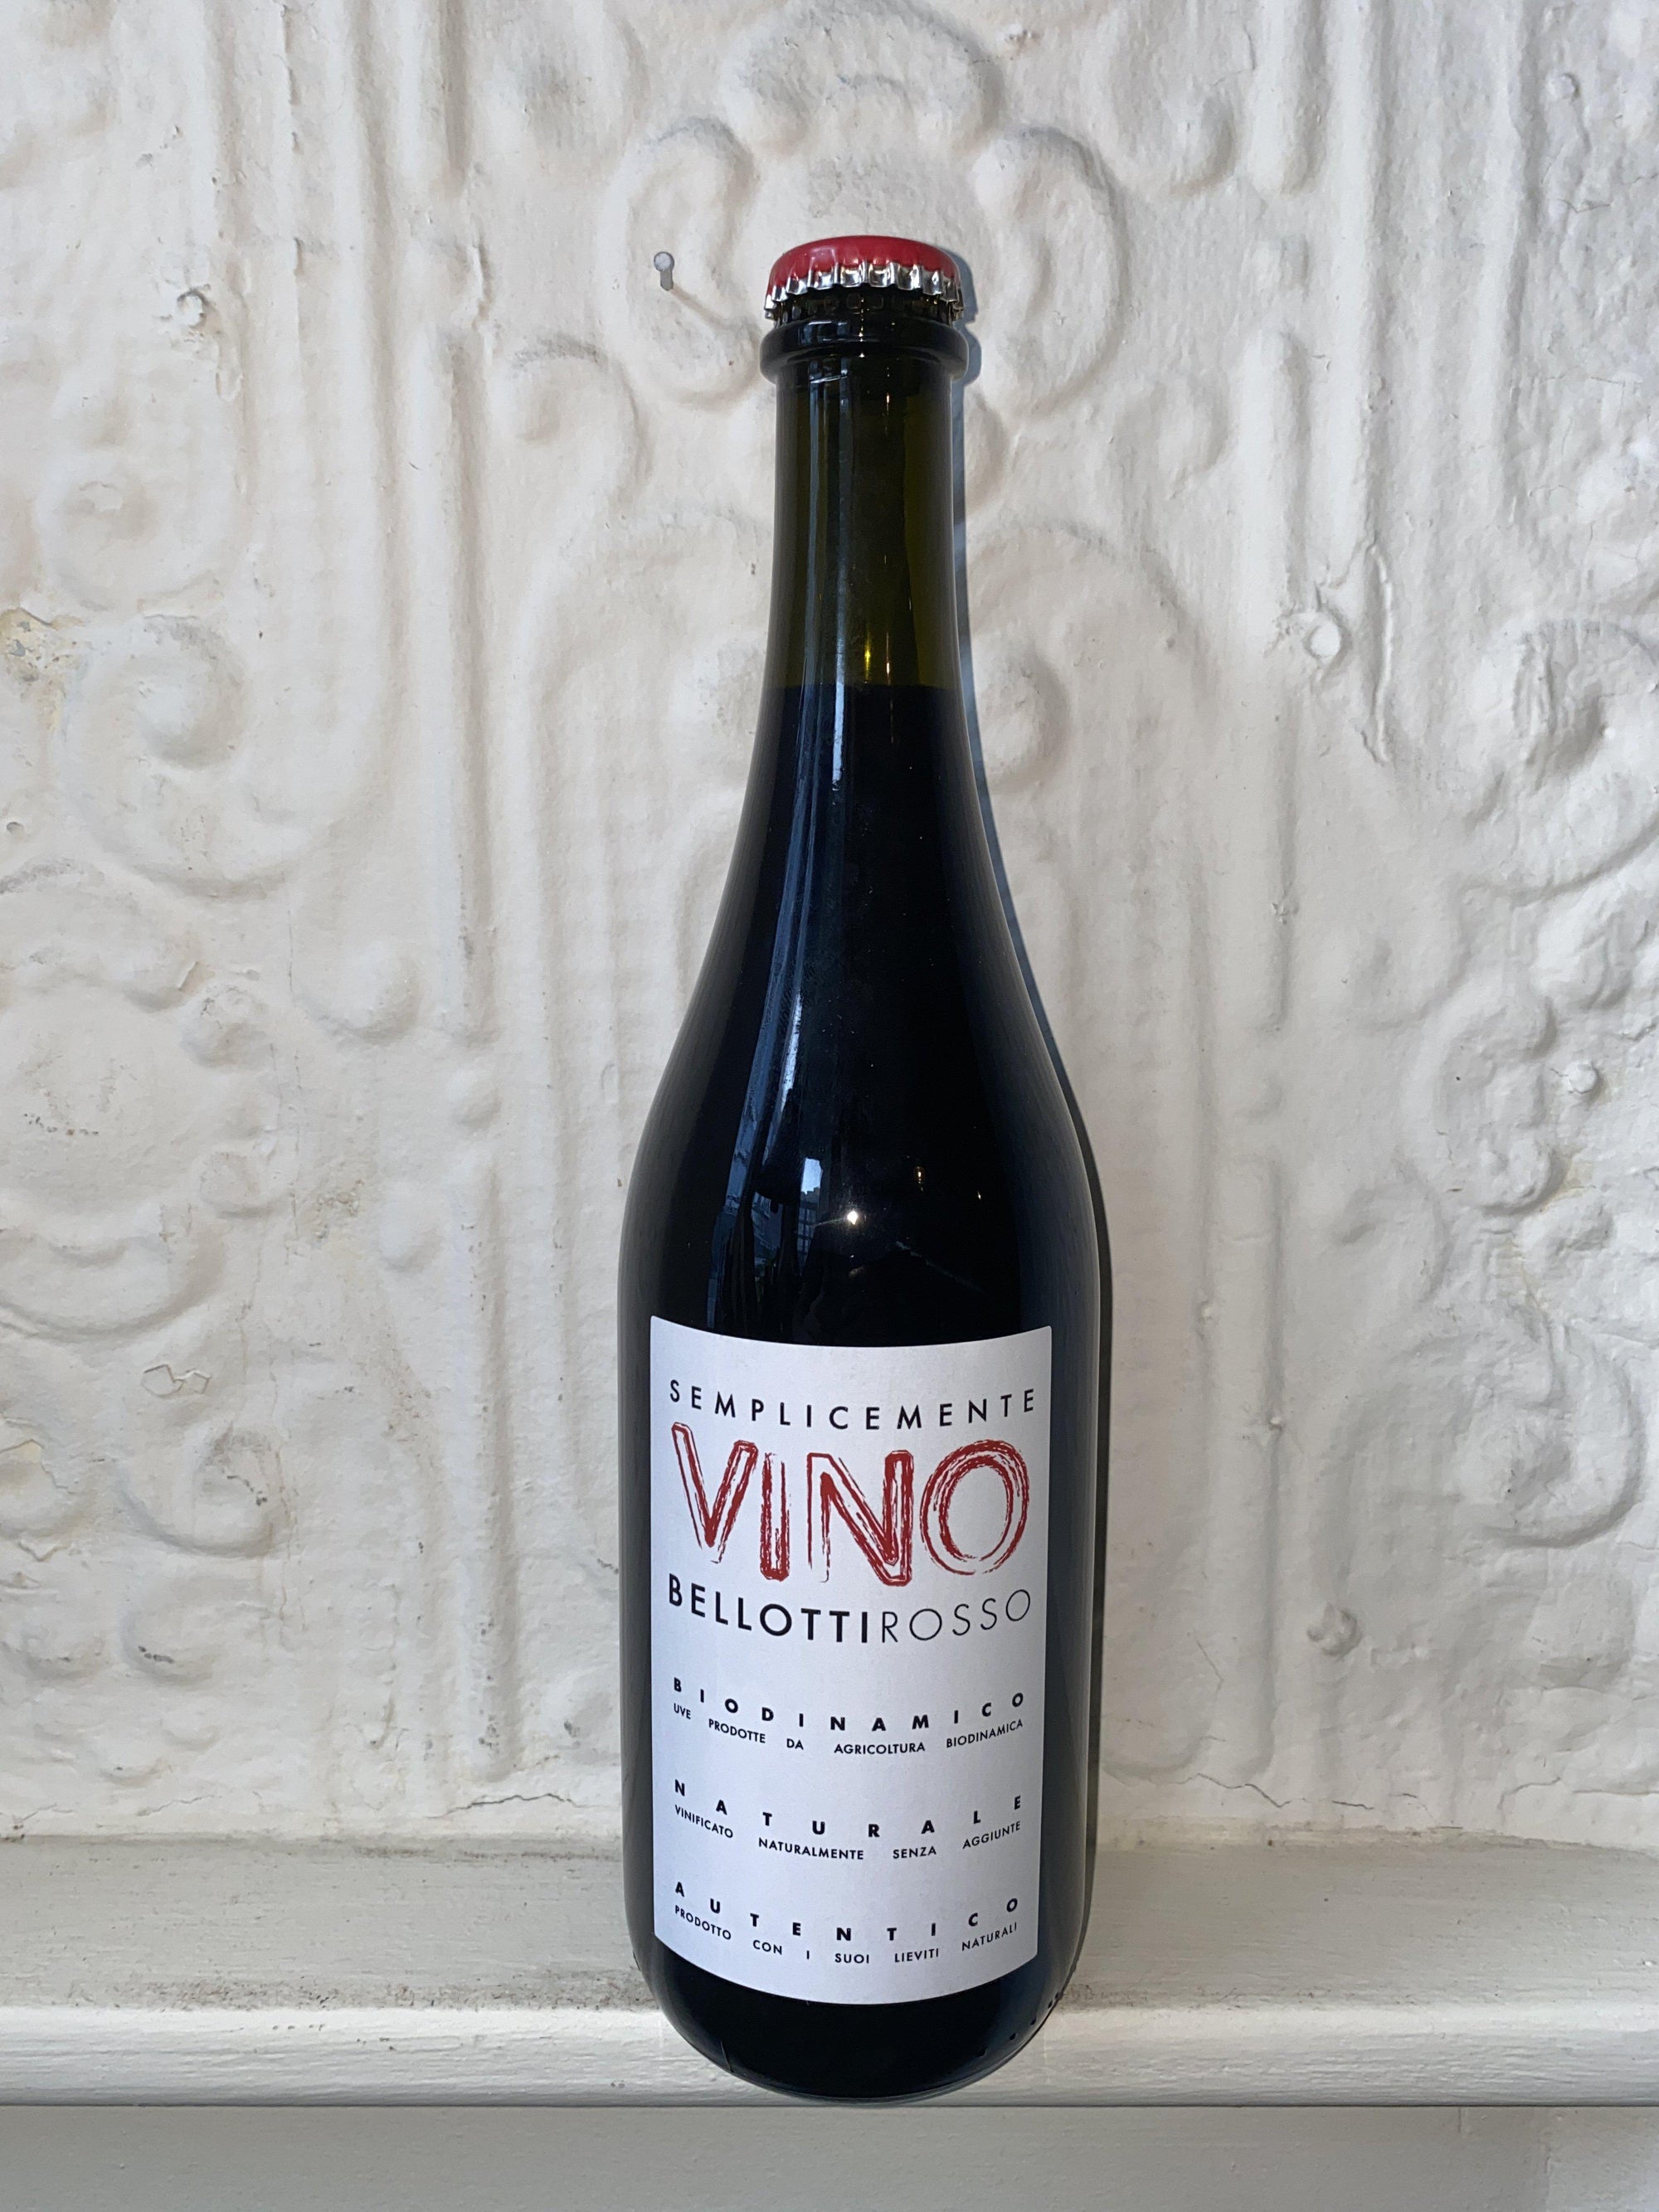 Semplicemente Vino Bellotti Rosso, Cascina degli Ulivi 2019 (Piedmont, Italy)-Wine-Bibber & Bell